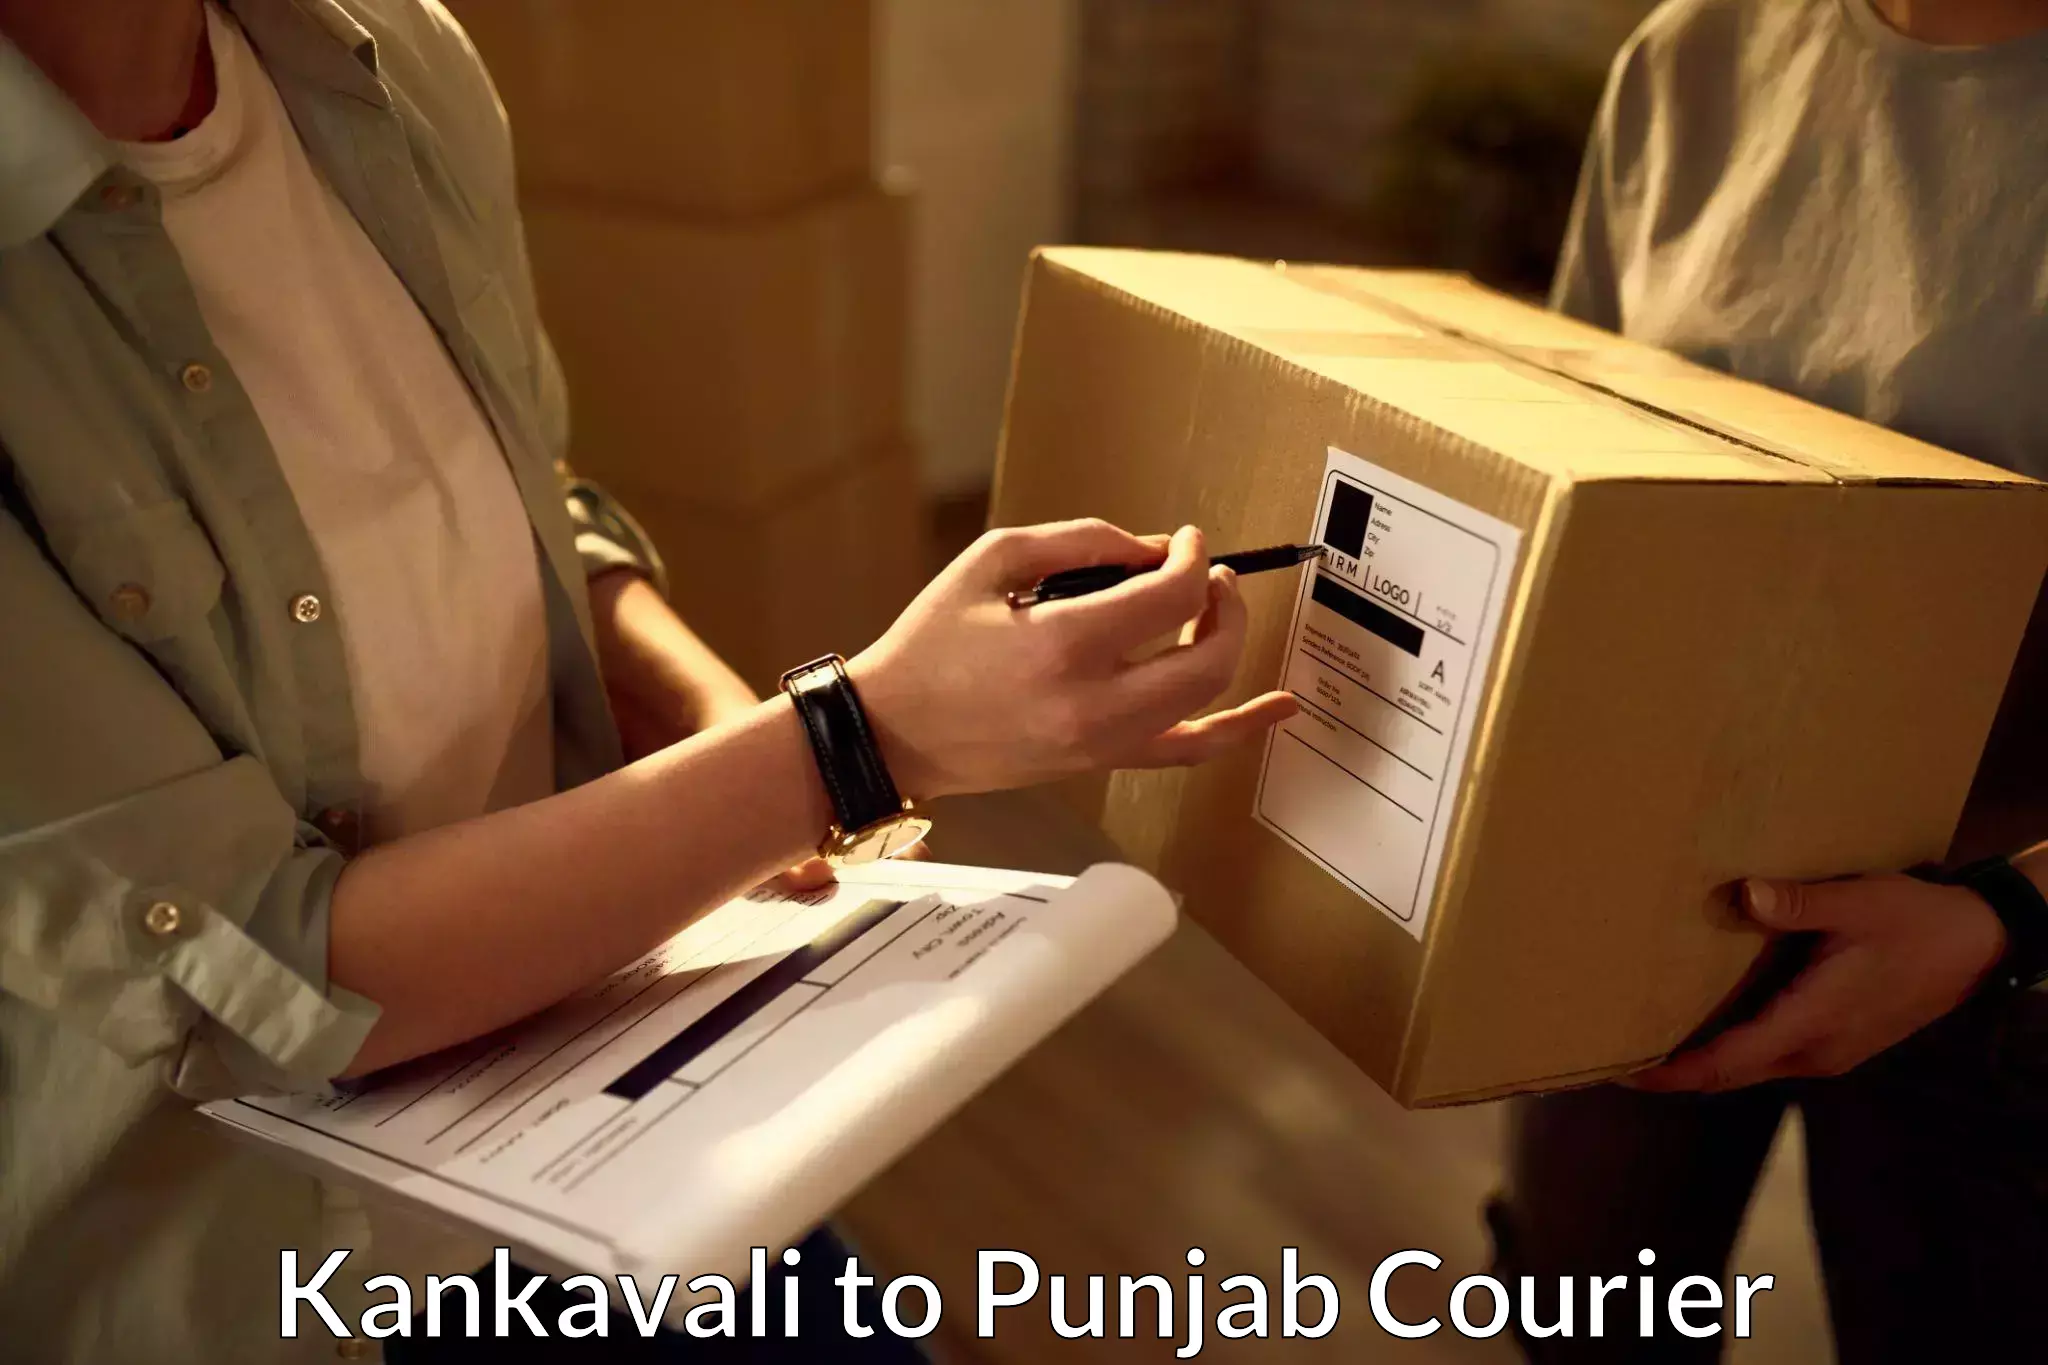 E-commerce fulfillment Kankavali to Tarsikka